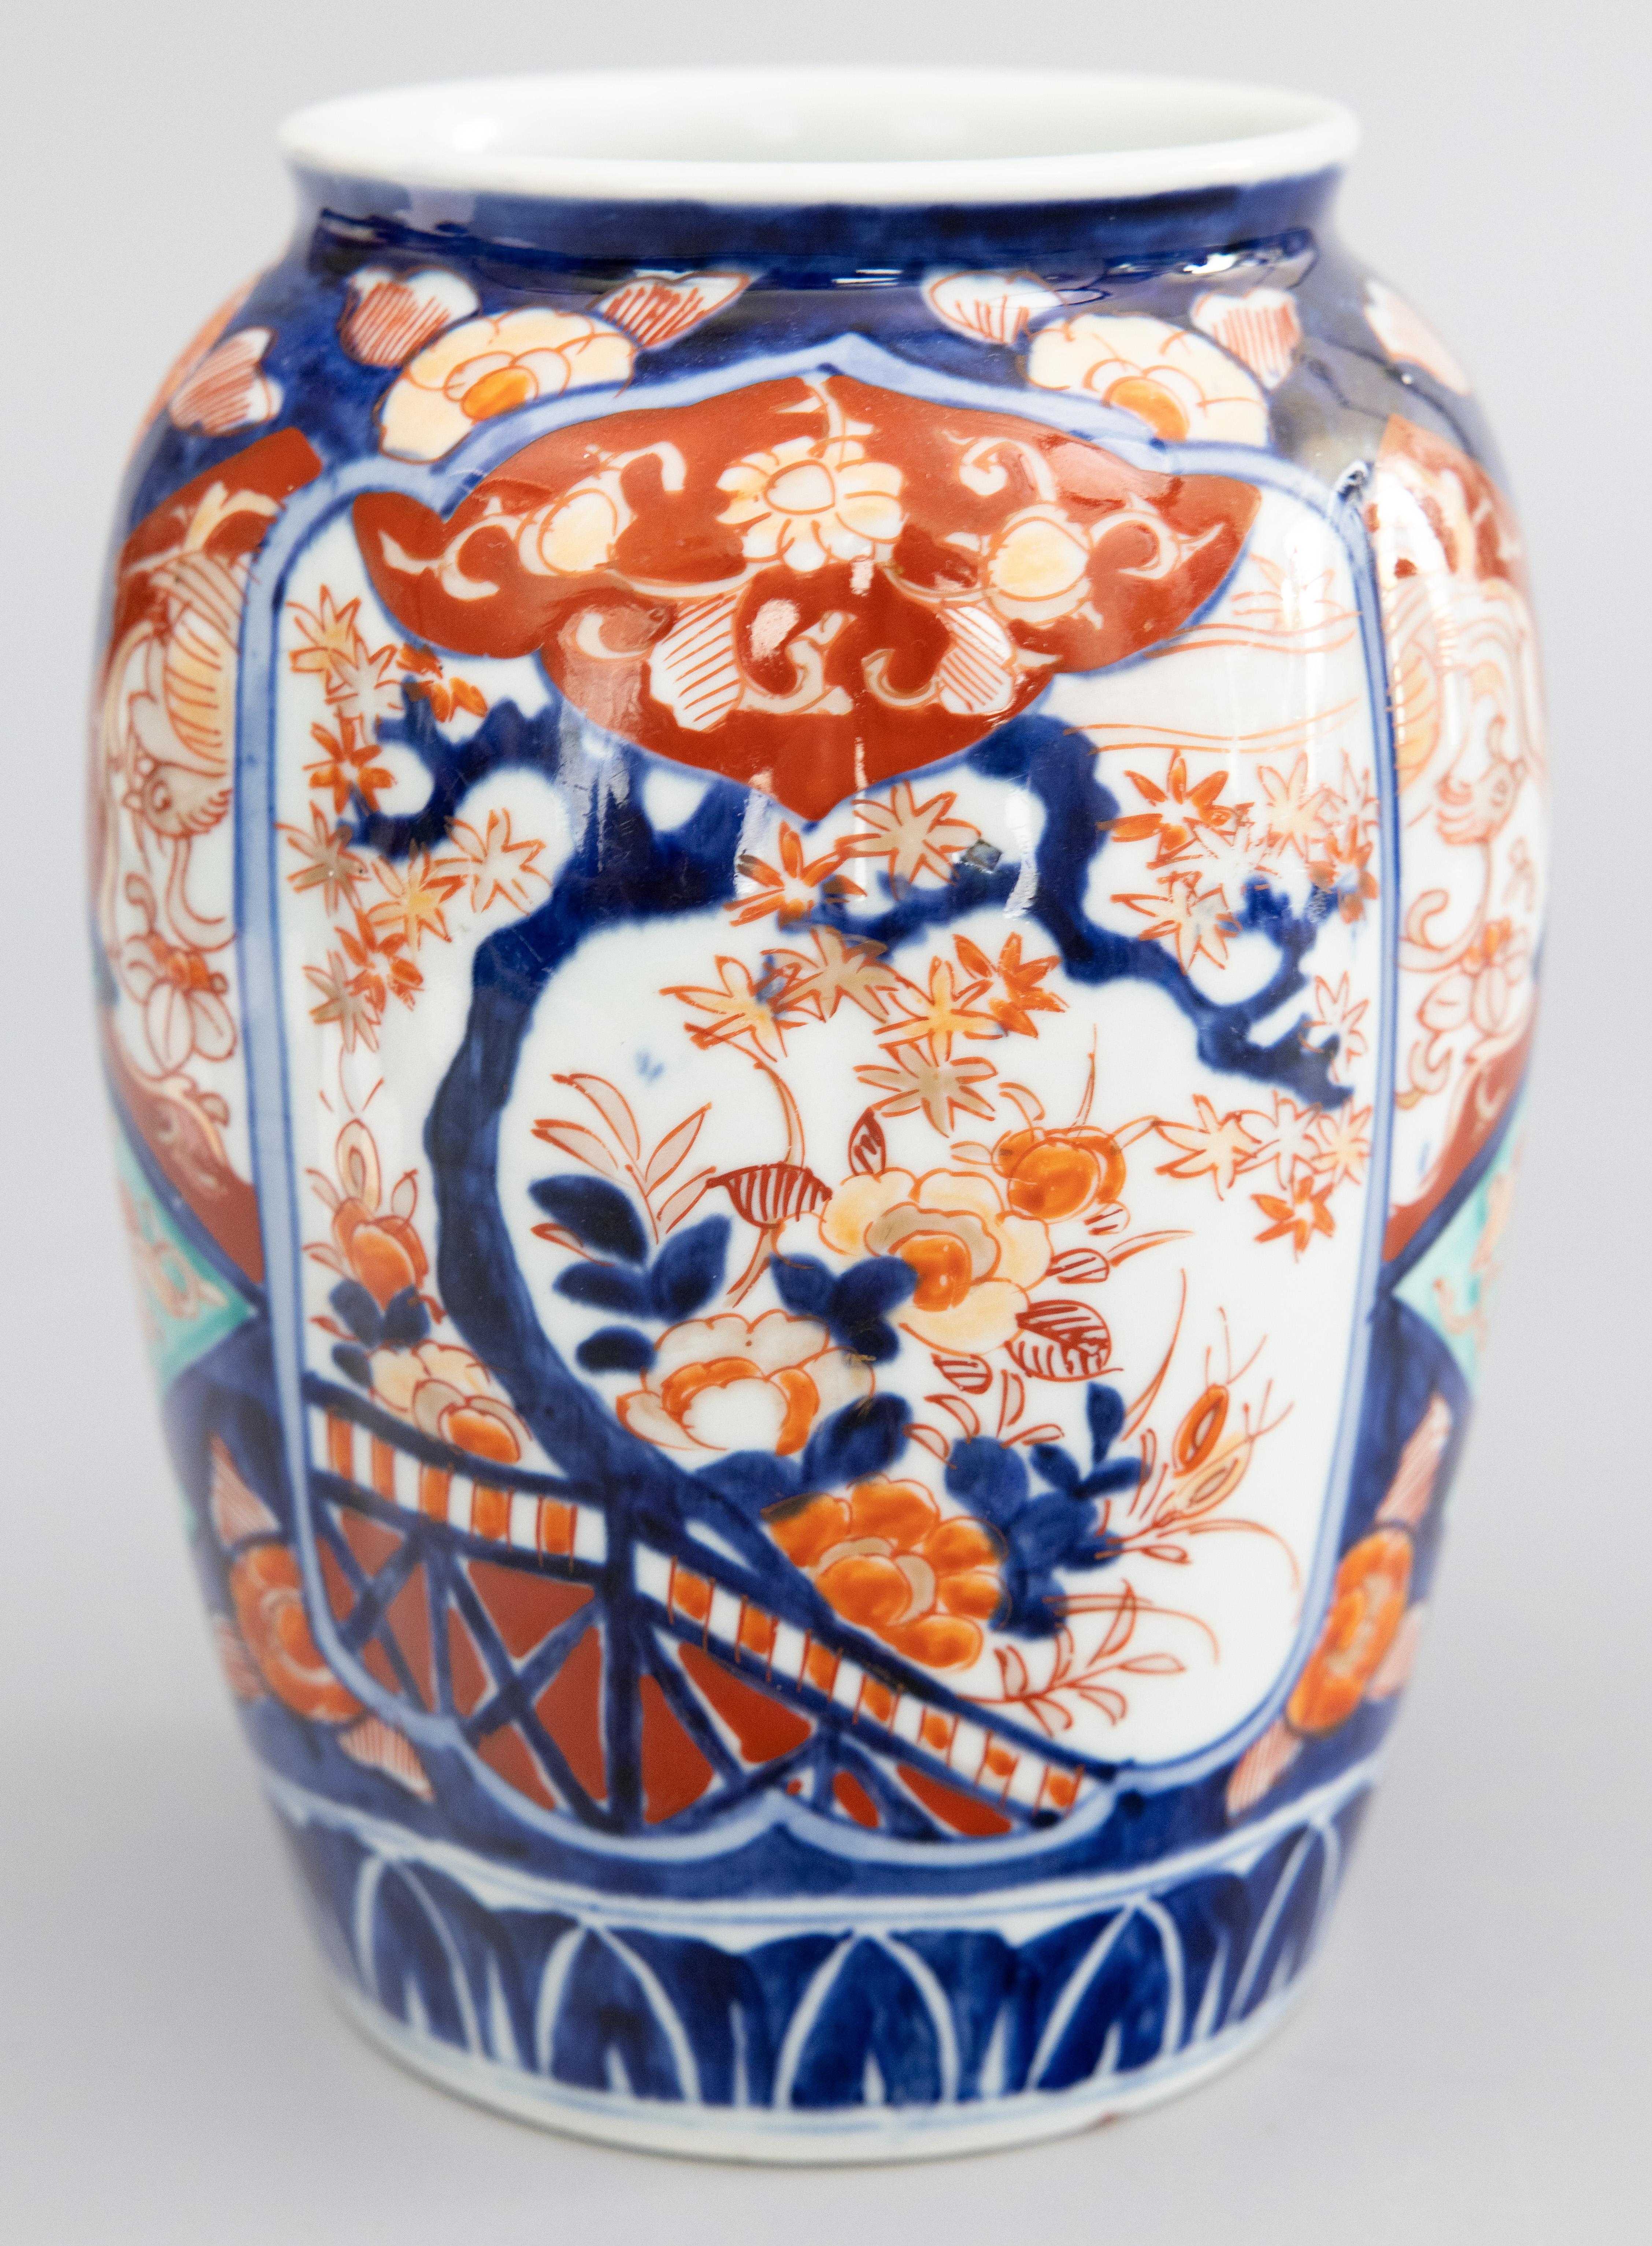 Magnifique vase japonais Imari du XIXe siècle de la période Meiji, vers 1870. Ce vase fin a une belle forme lobée et un design floral peint à la main dans les couleurs traditionnelles d'Imari avec de superbes accents turquoise. Il est dans un état